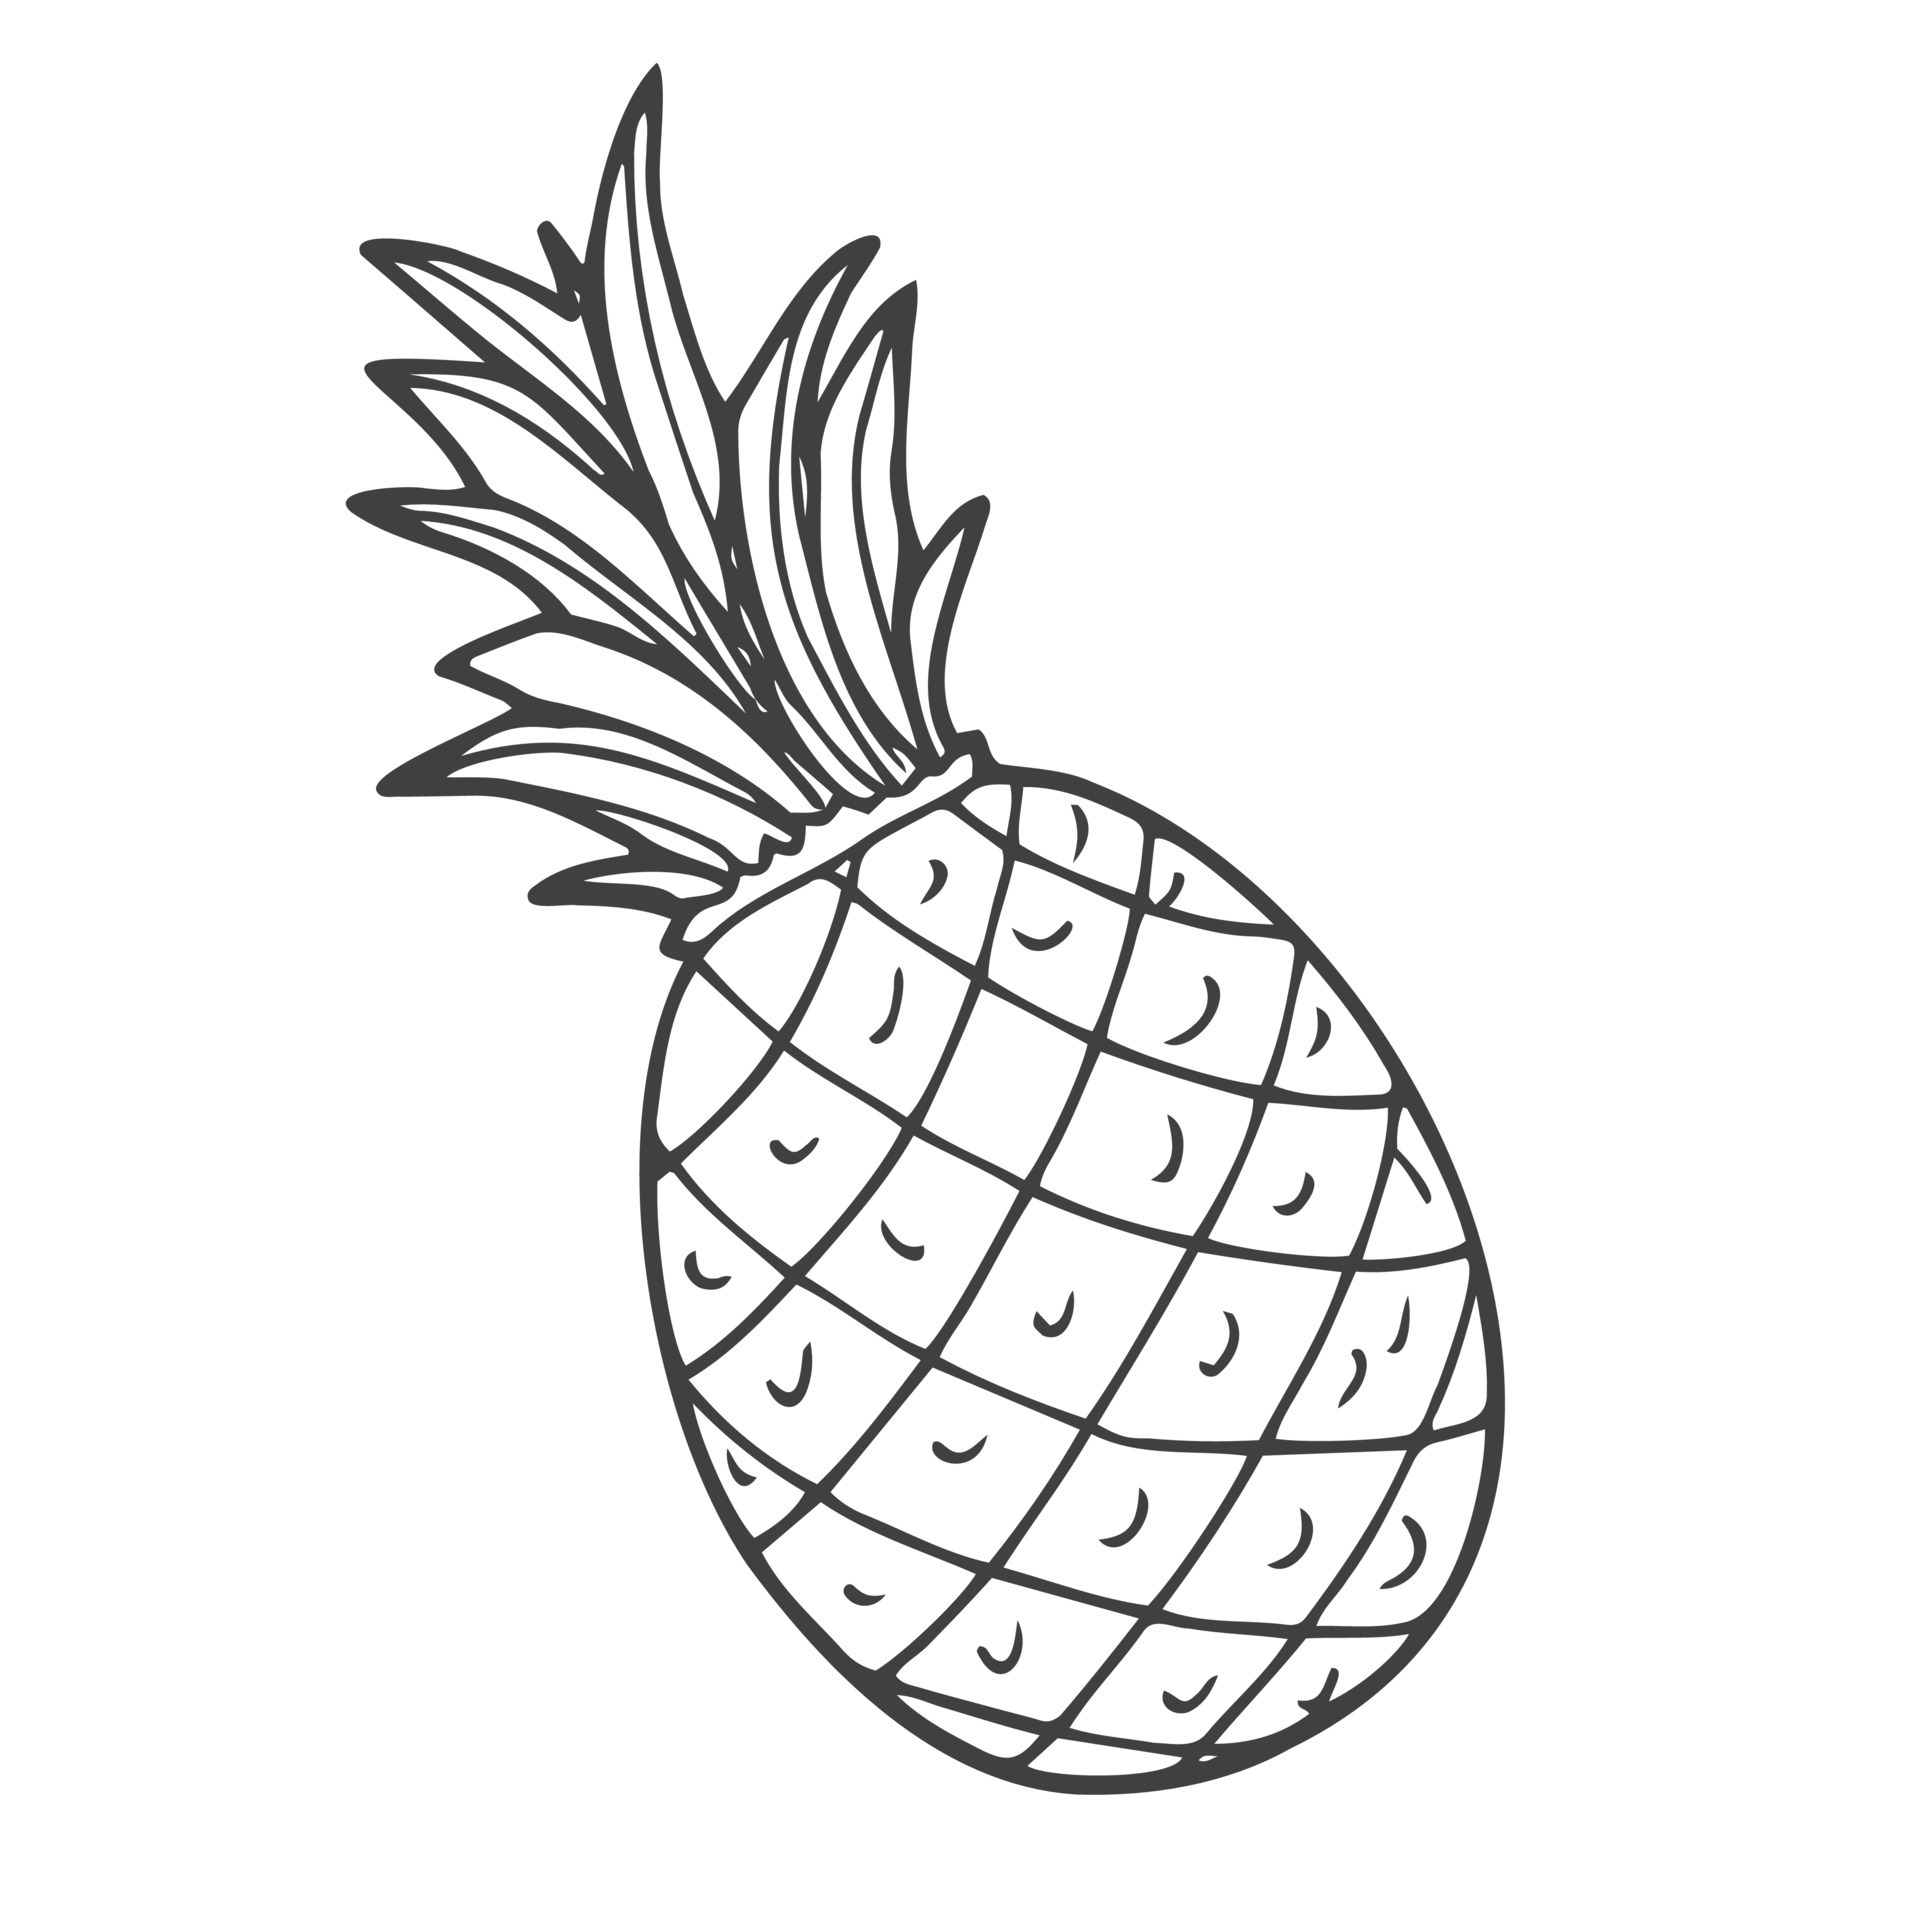 Inspecteur Moreel onderwijs Weggegooid schets zwart en wit beeld van een ananas in tekening stijl 18916288  Vectorkunst bij Vecteezy